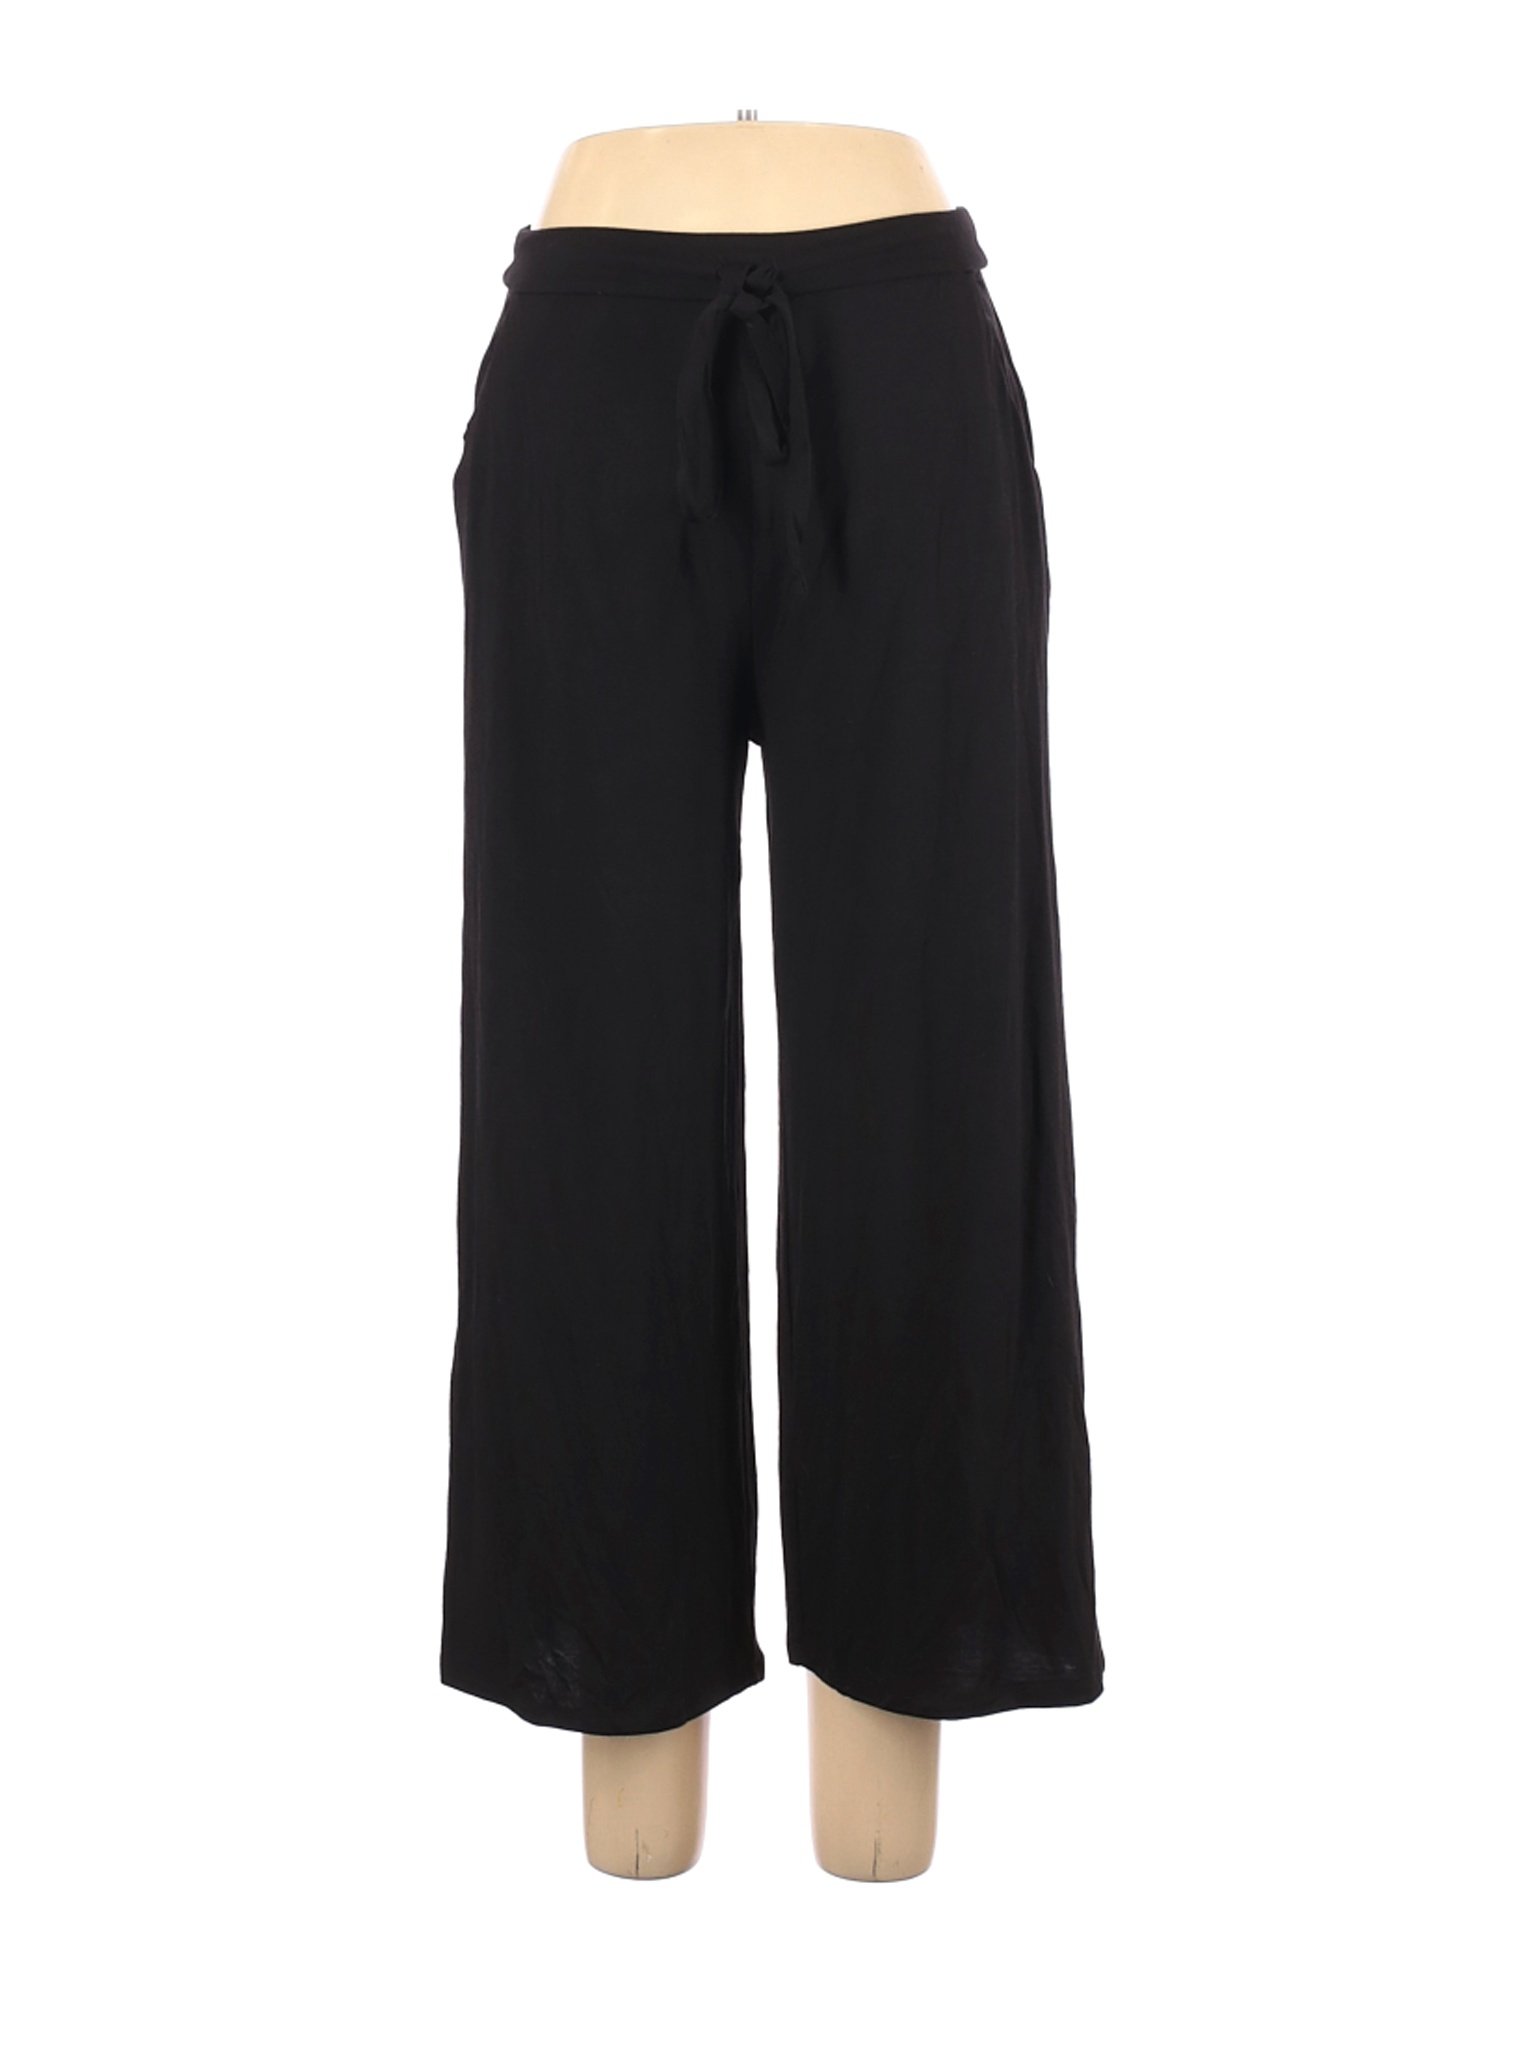 Zenana Premium Women Black Casual Pants L | eBay